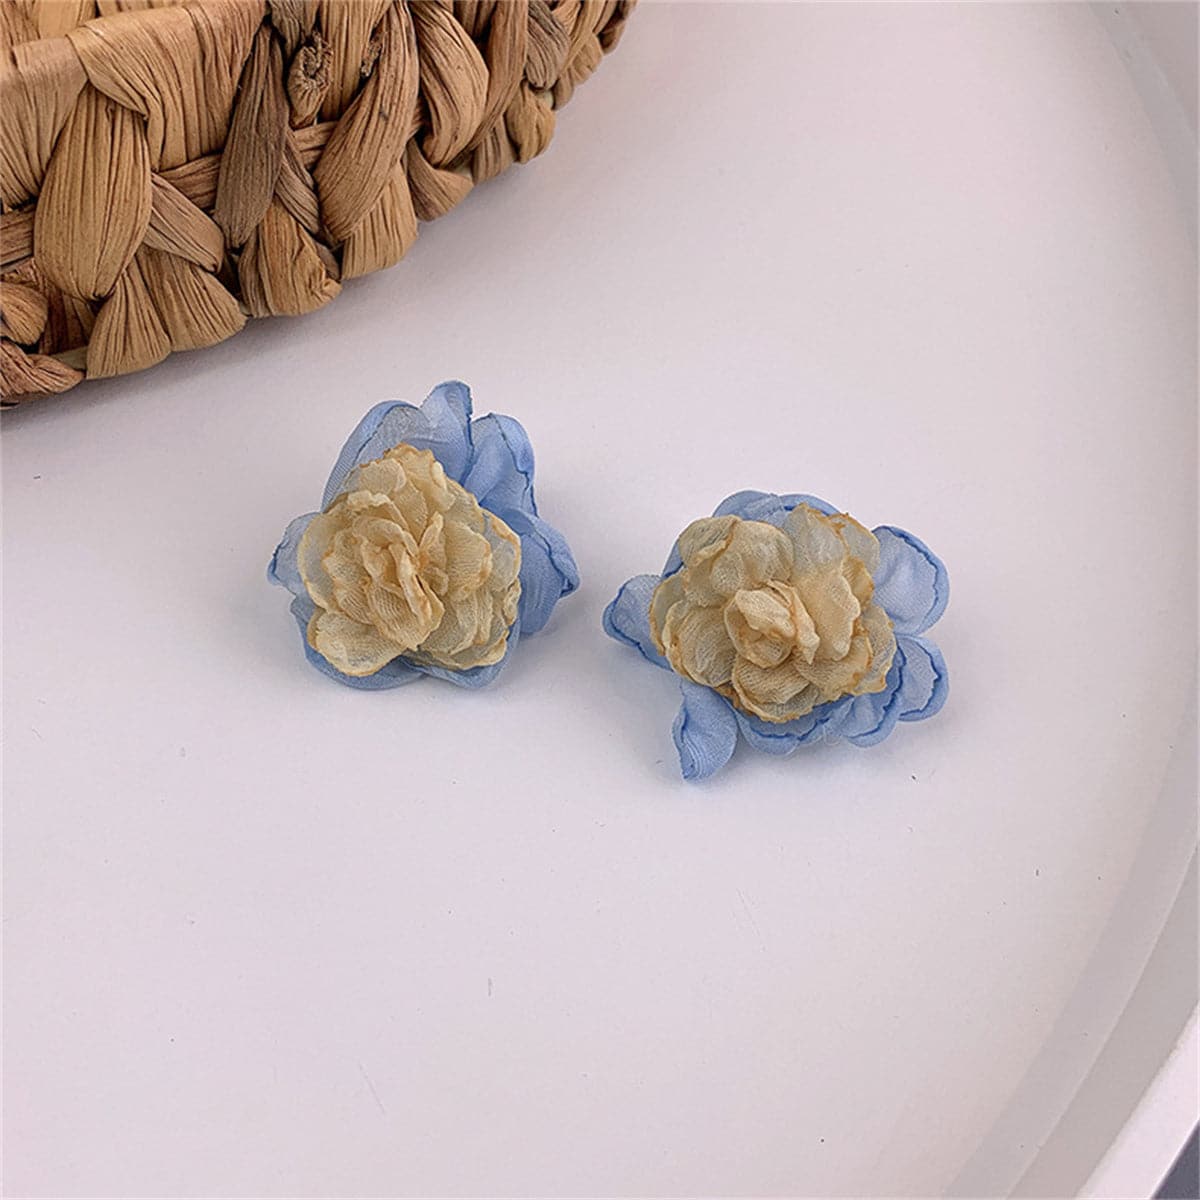 Beige & Blue Chiffon Flower Stud Earrings